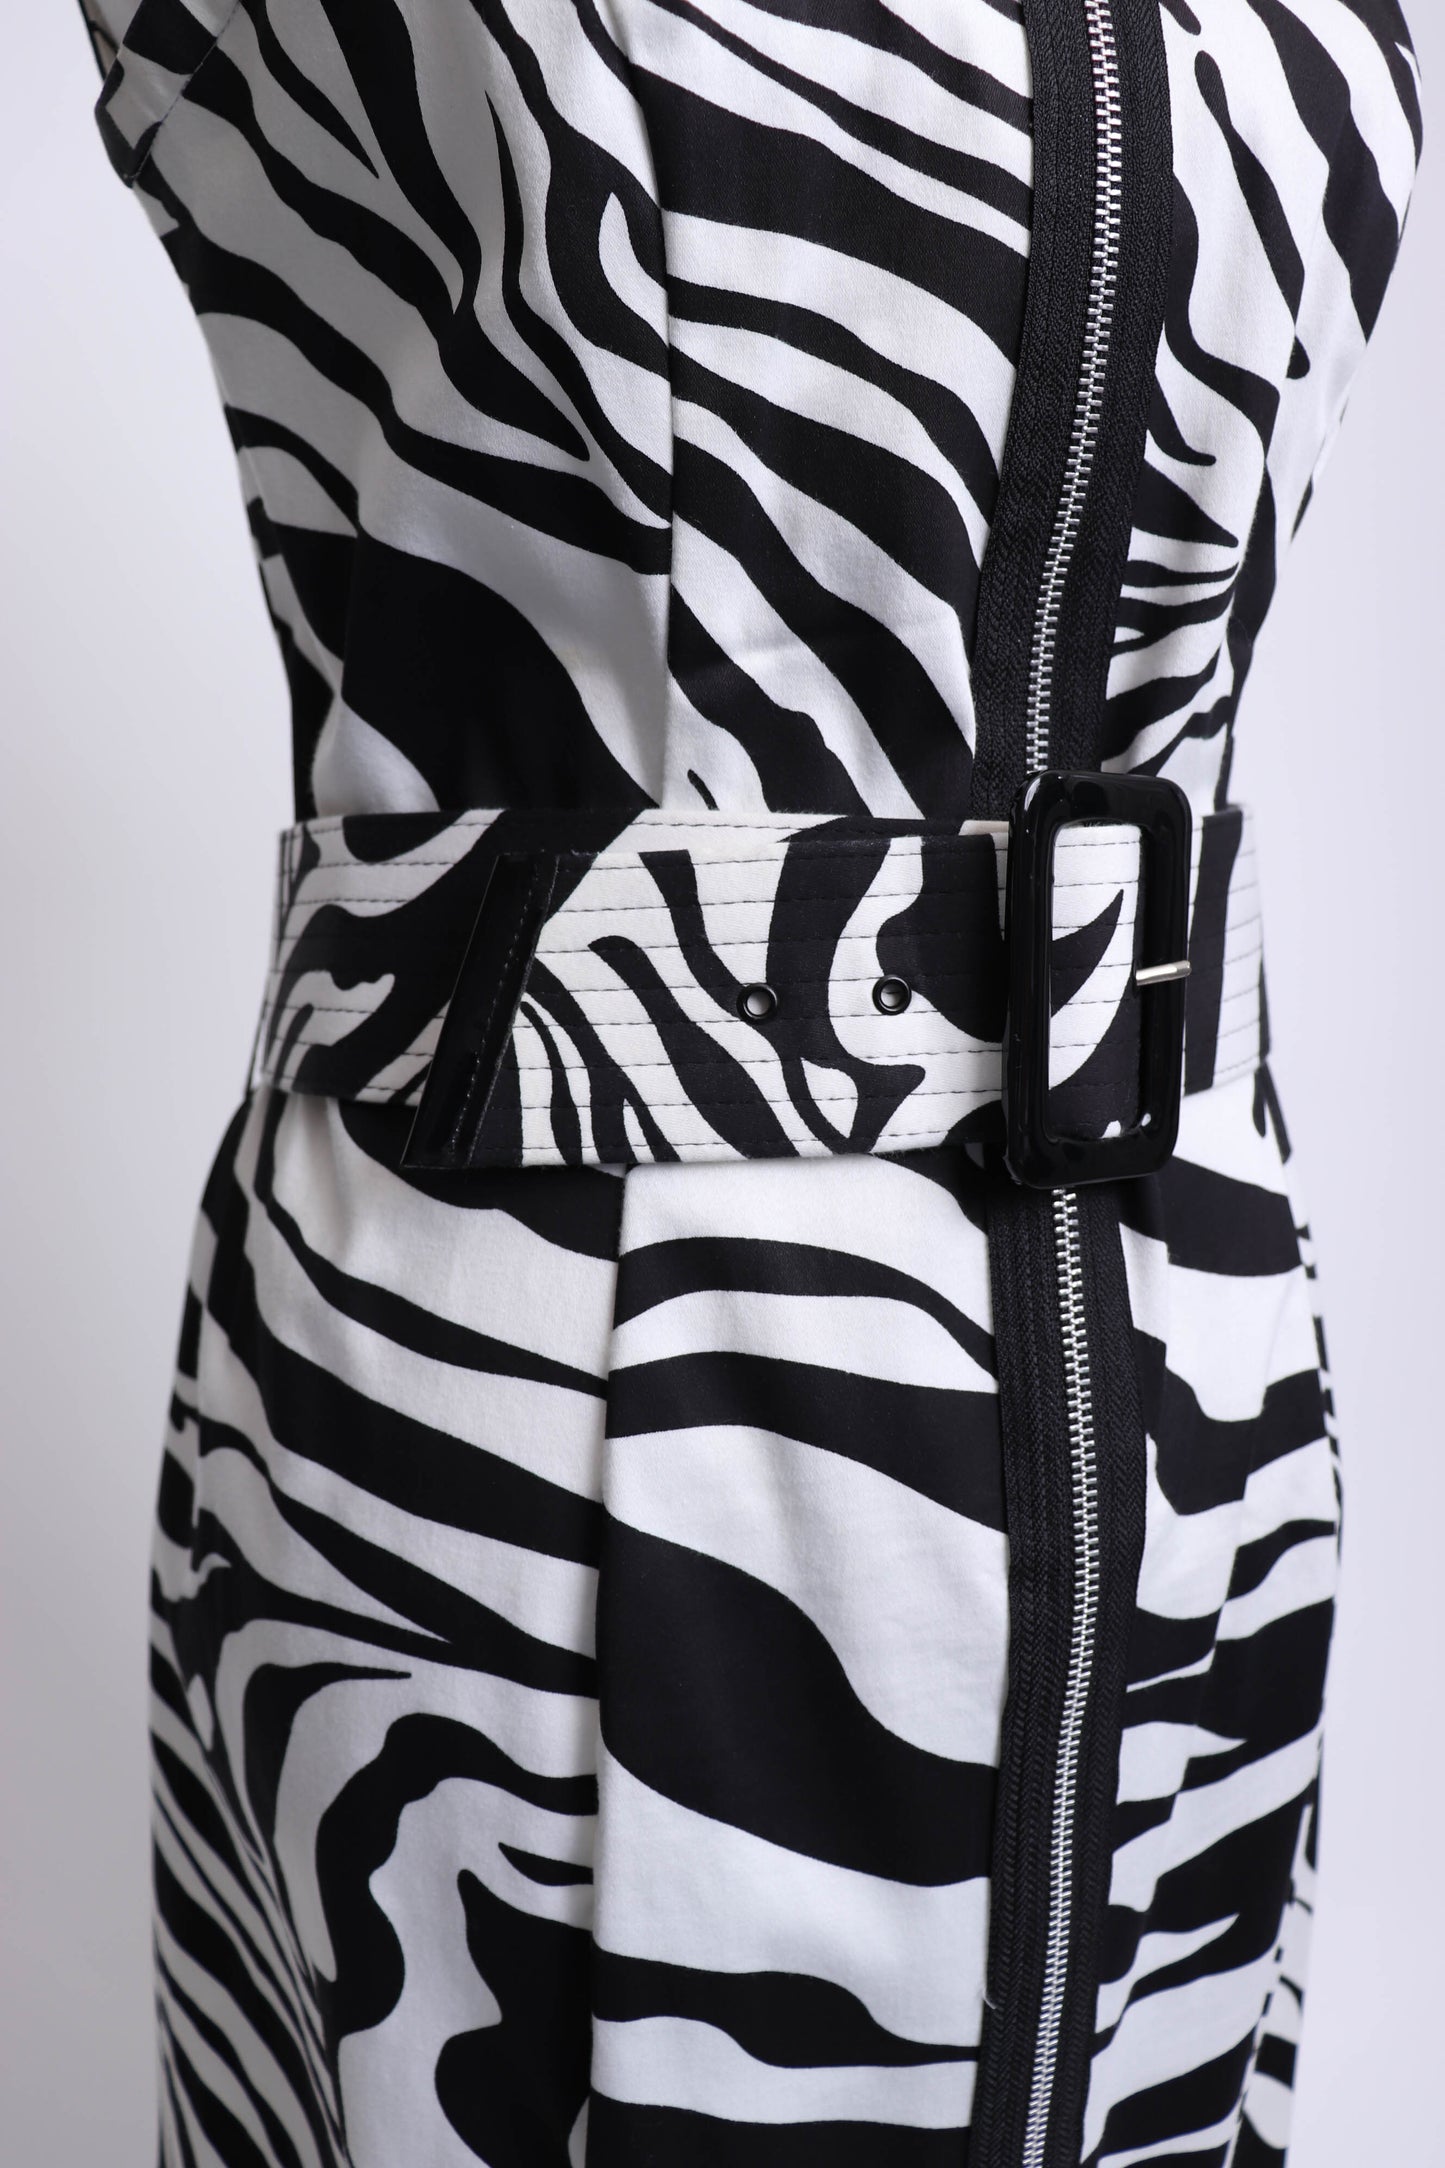 80's Black and White Zebra Print Sleeveless Dress S/M